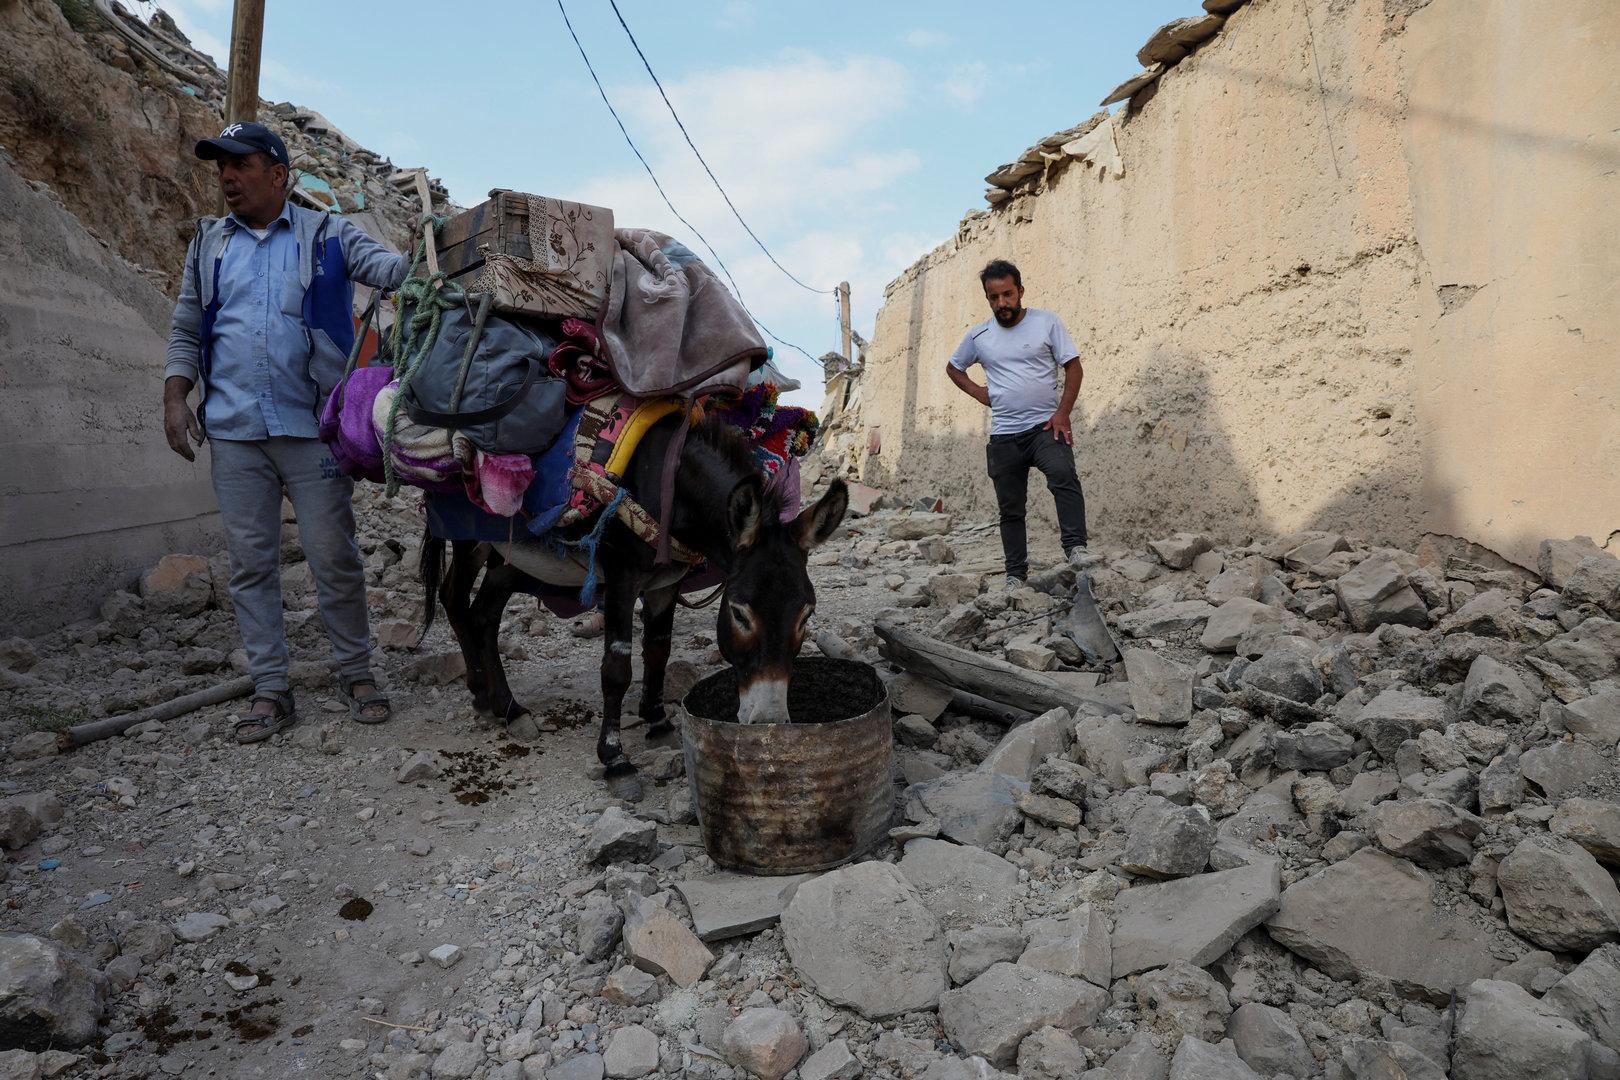 Retter auf vier Hufen: Wie die Esel nach dem Erdbeben halfen